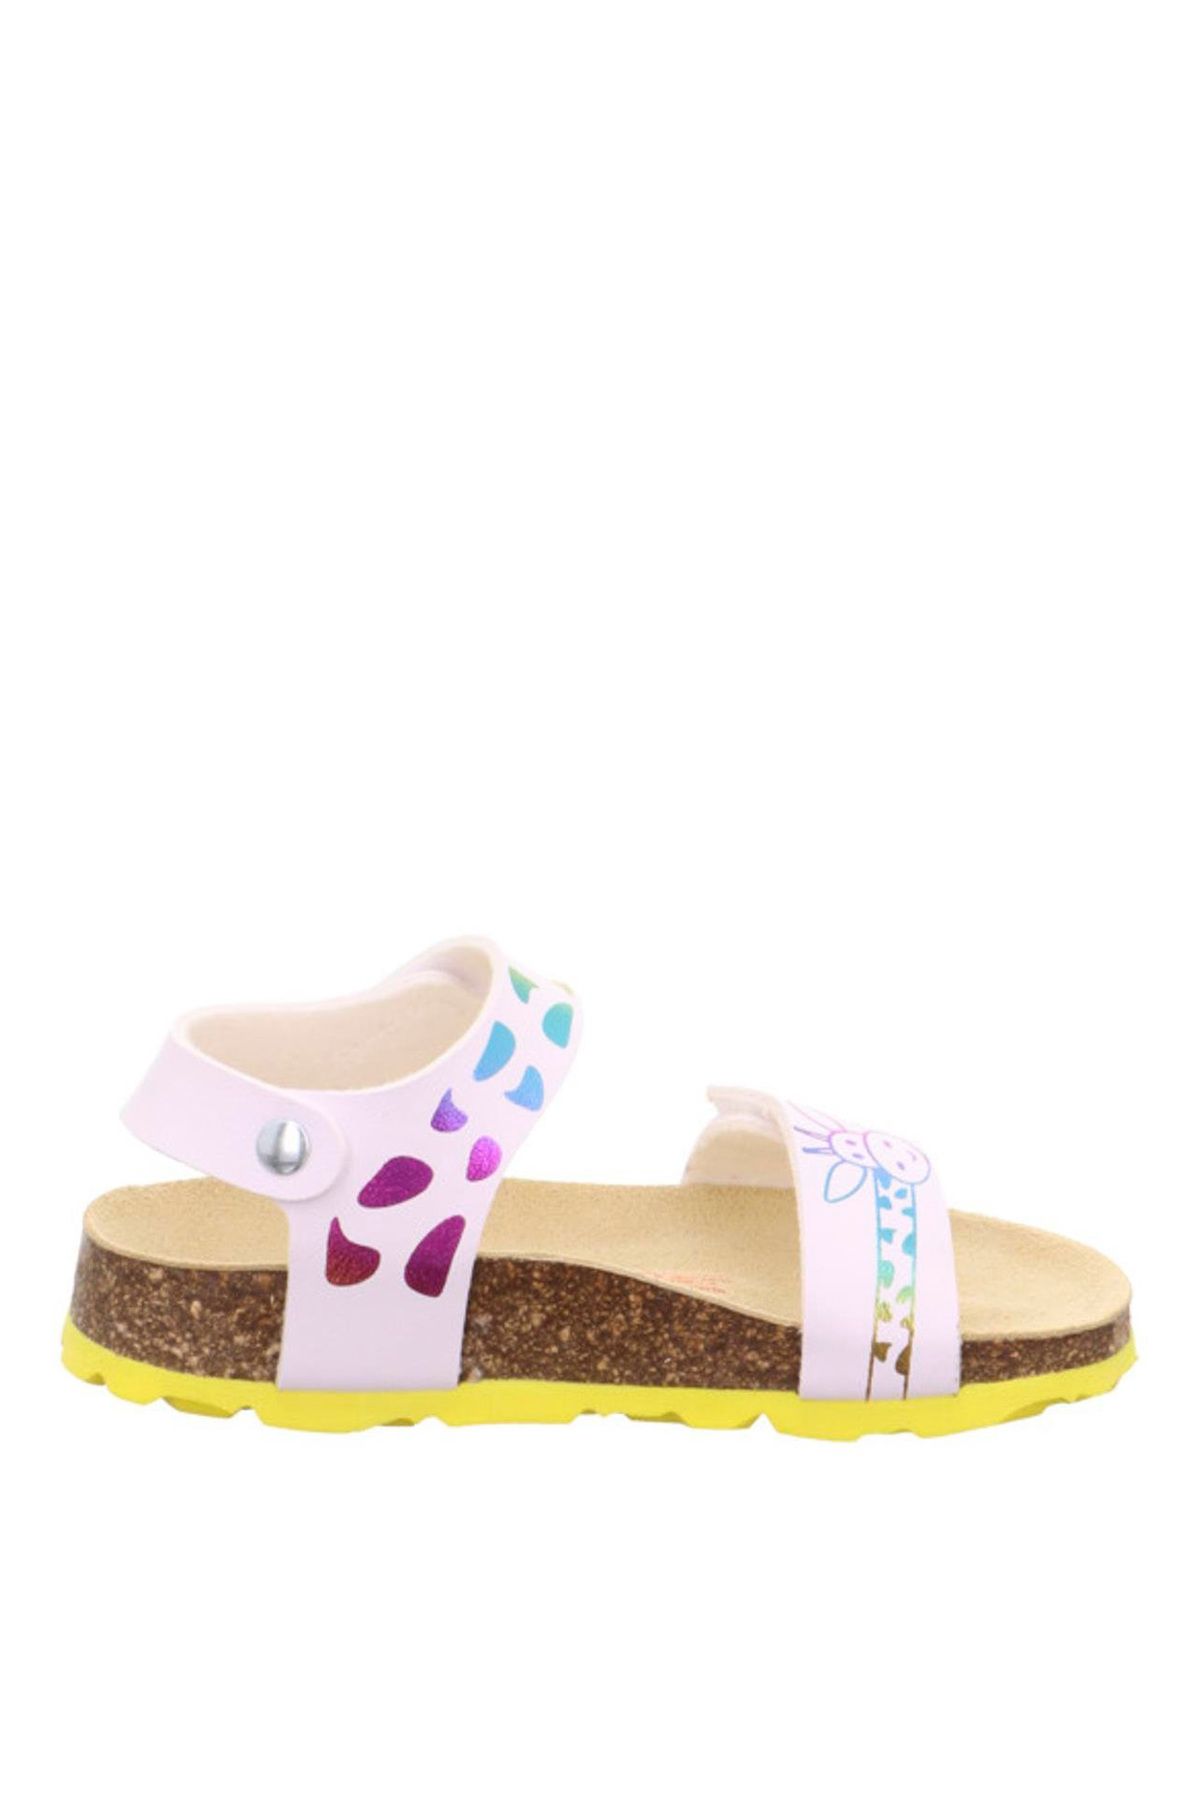 Superfit Beyaz Kız Bebek Sandalet 1-000123-1020-1